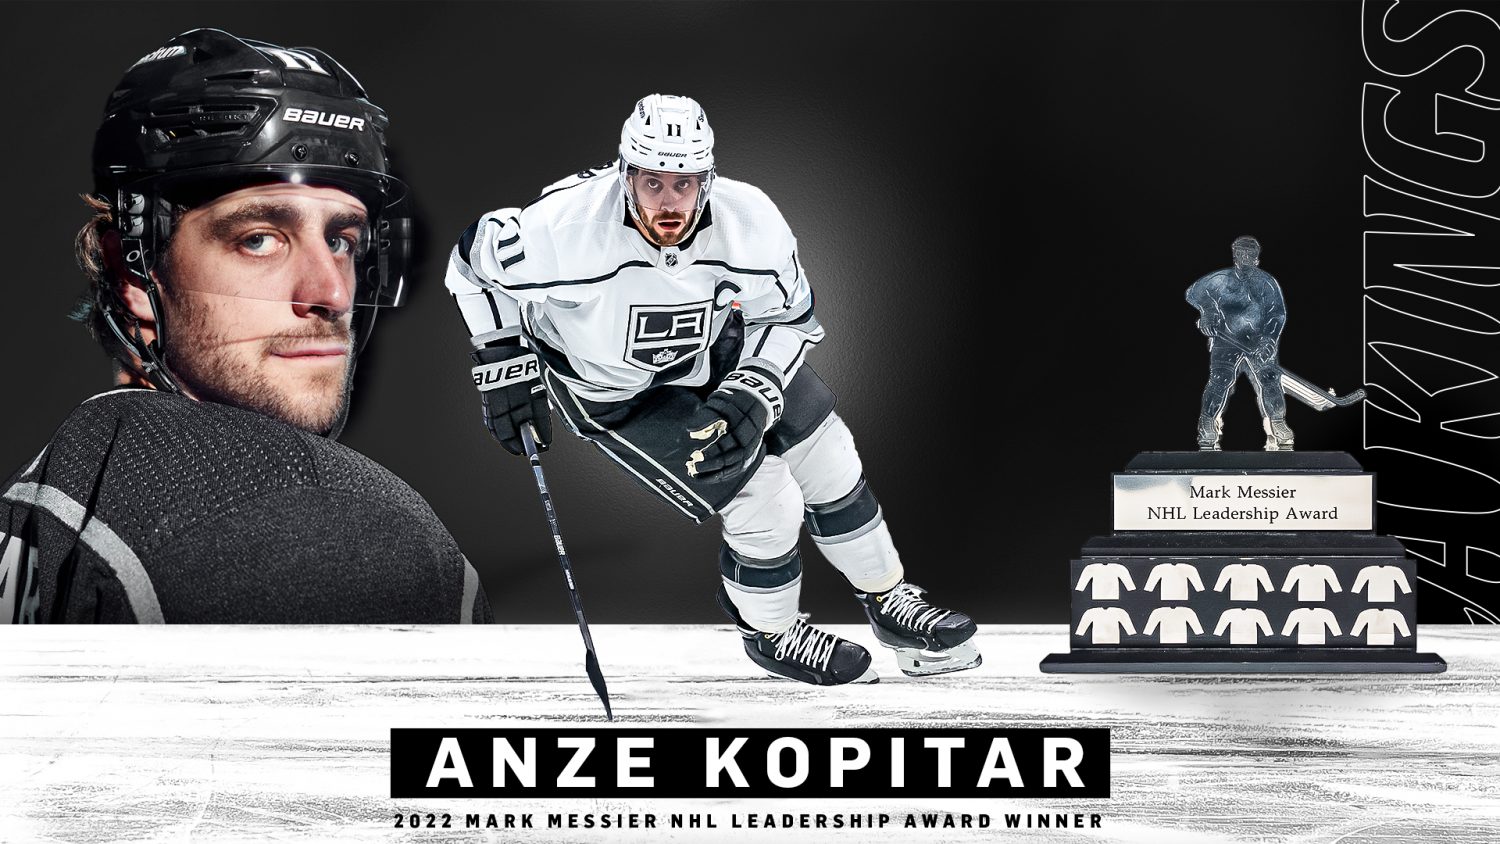 NHL awards: Kings captain Anze Kopitar wins Lady Byng award - Los